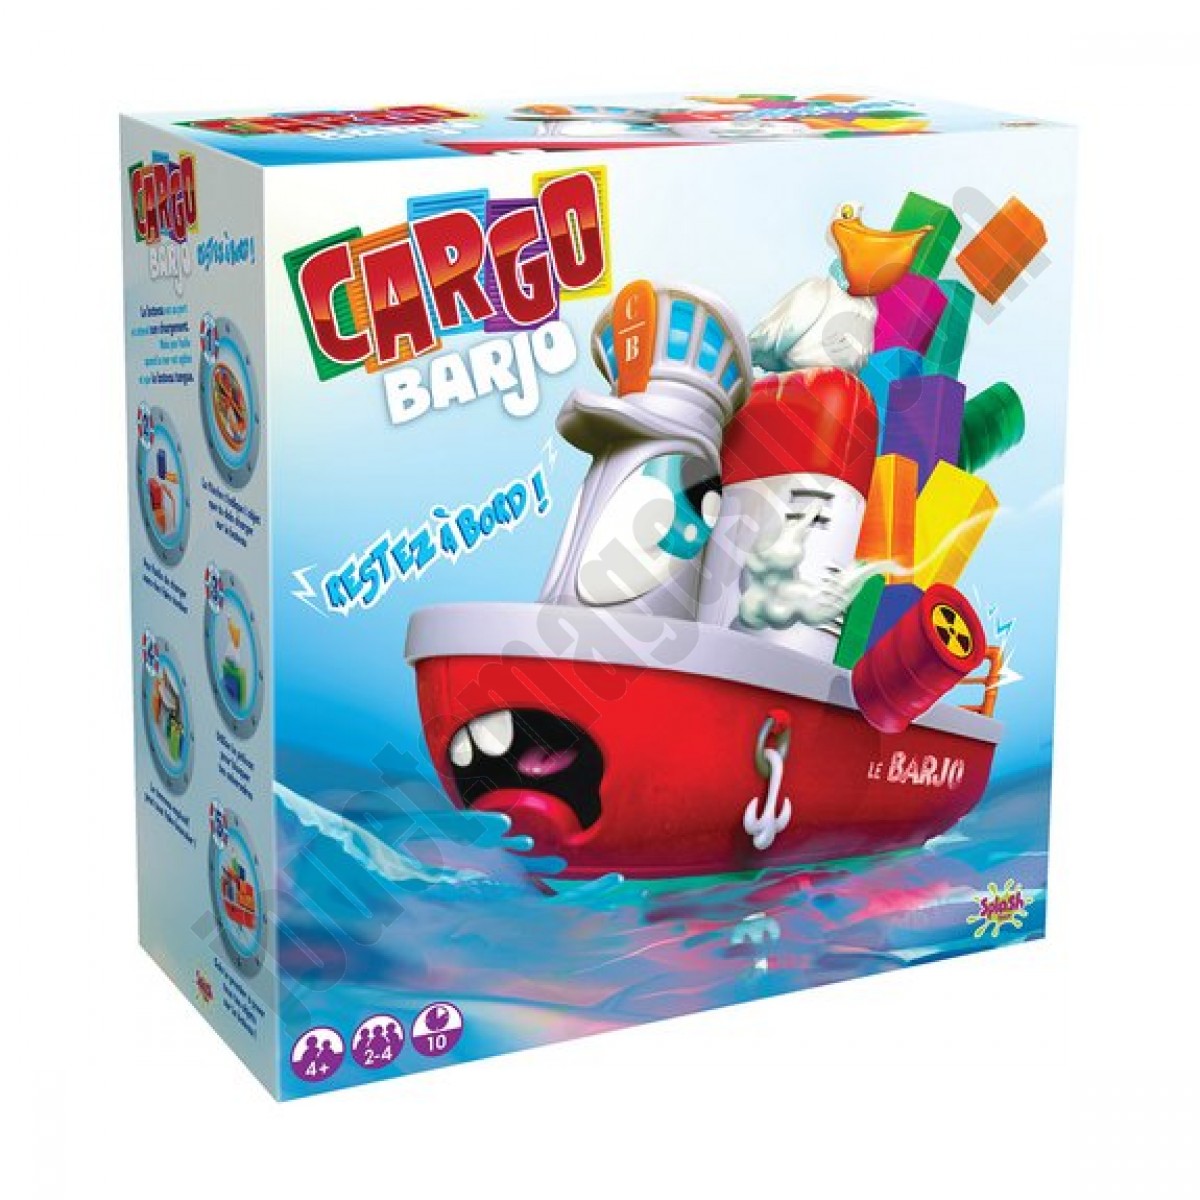 Cargo Barjo En promotion - Cargo Barjo En promotion